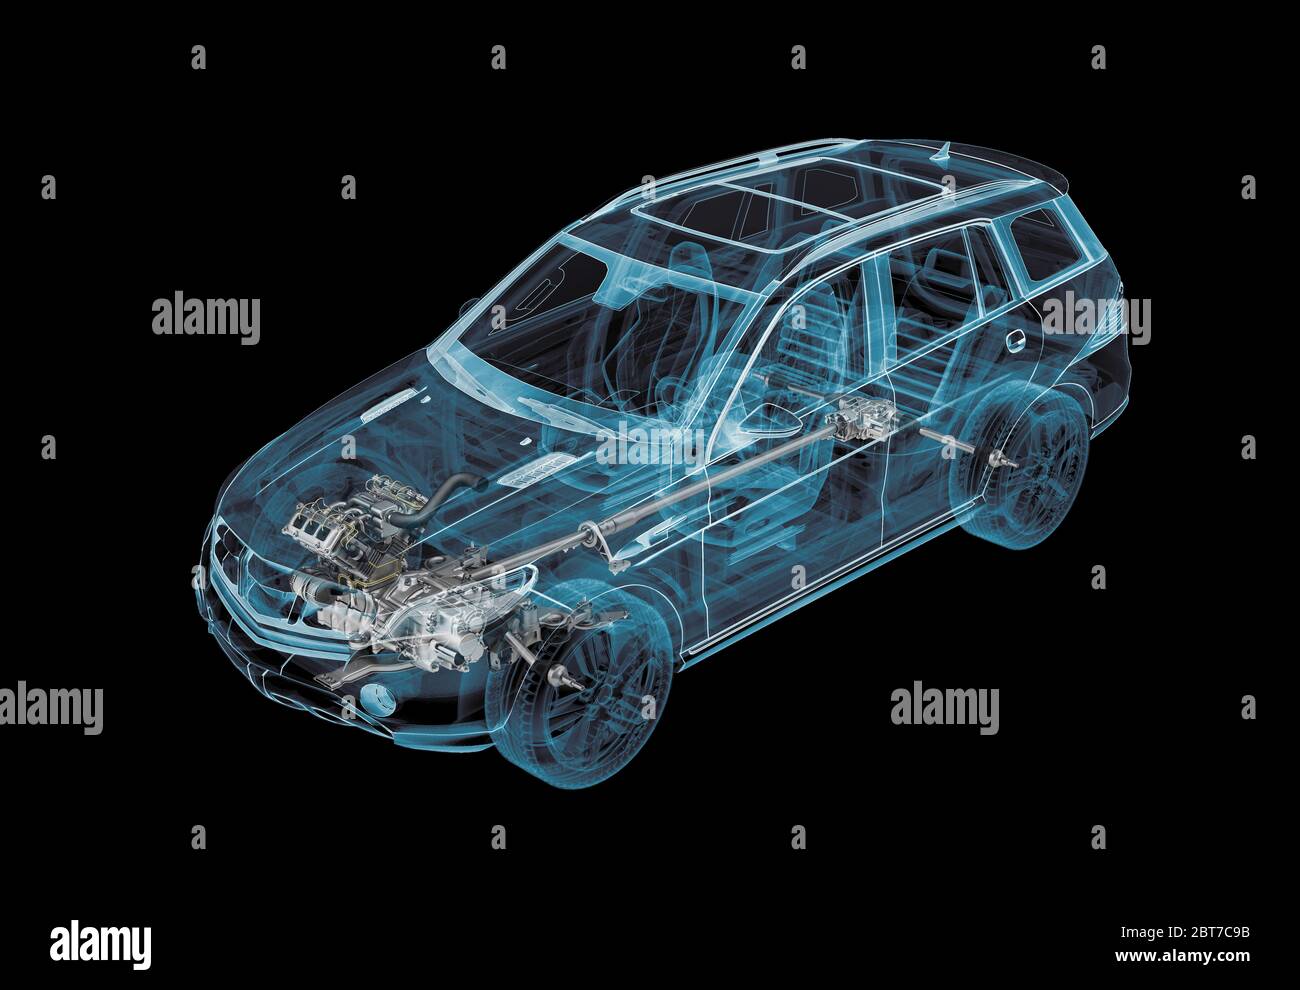 Technische 3d-Darstellung von SUV-Auto mit Röntgeneffekt und Antriebsstrang-System. Perspektivische Ansicht auf schwarzem Hintergrund. Stockfoto